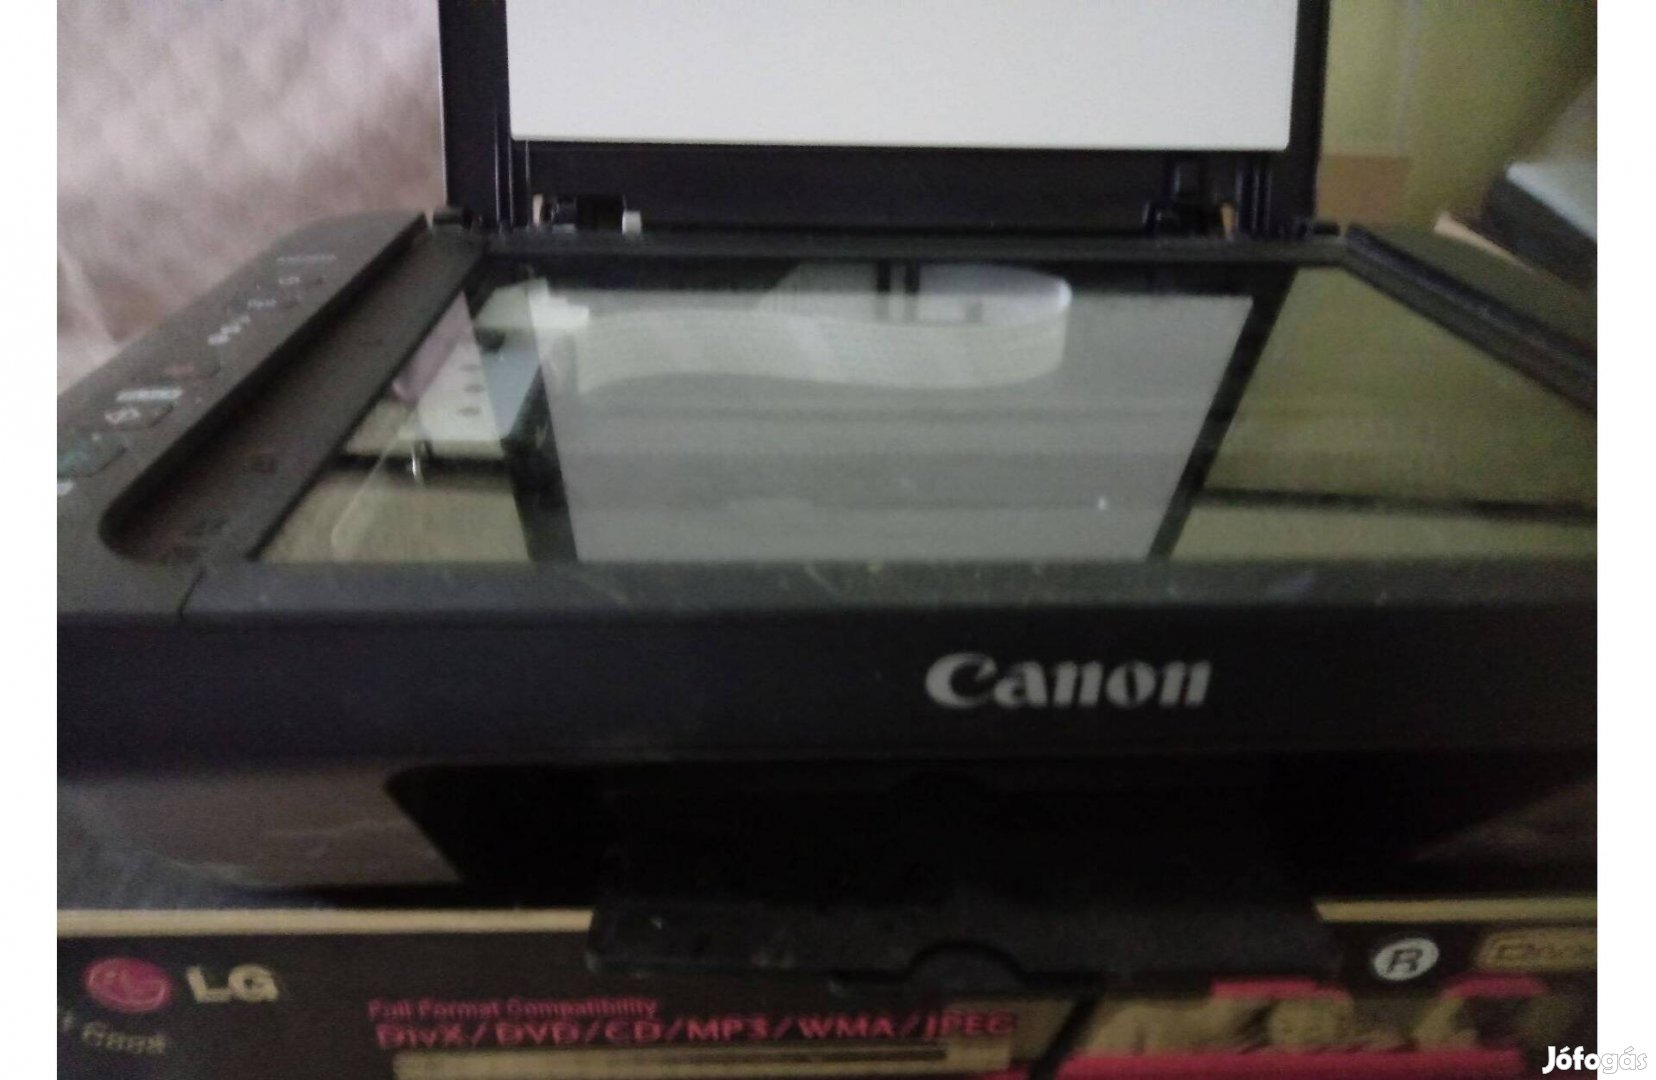 Canon MG 2950 nyomtató szkenner fénymásoló multifunction printer